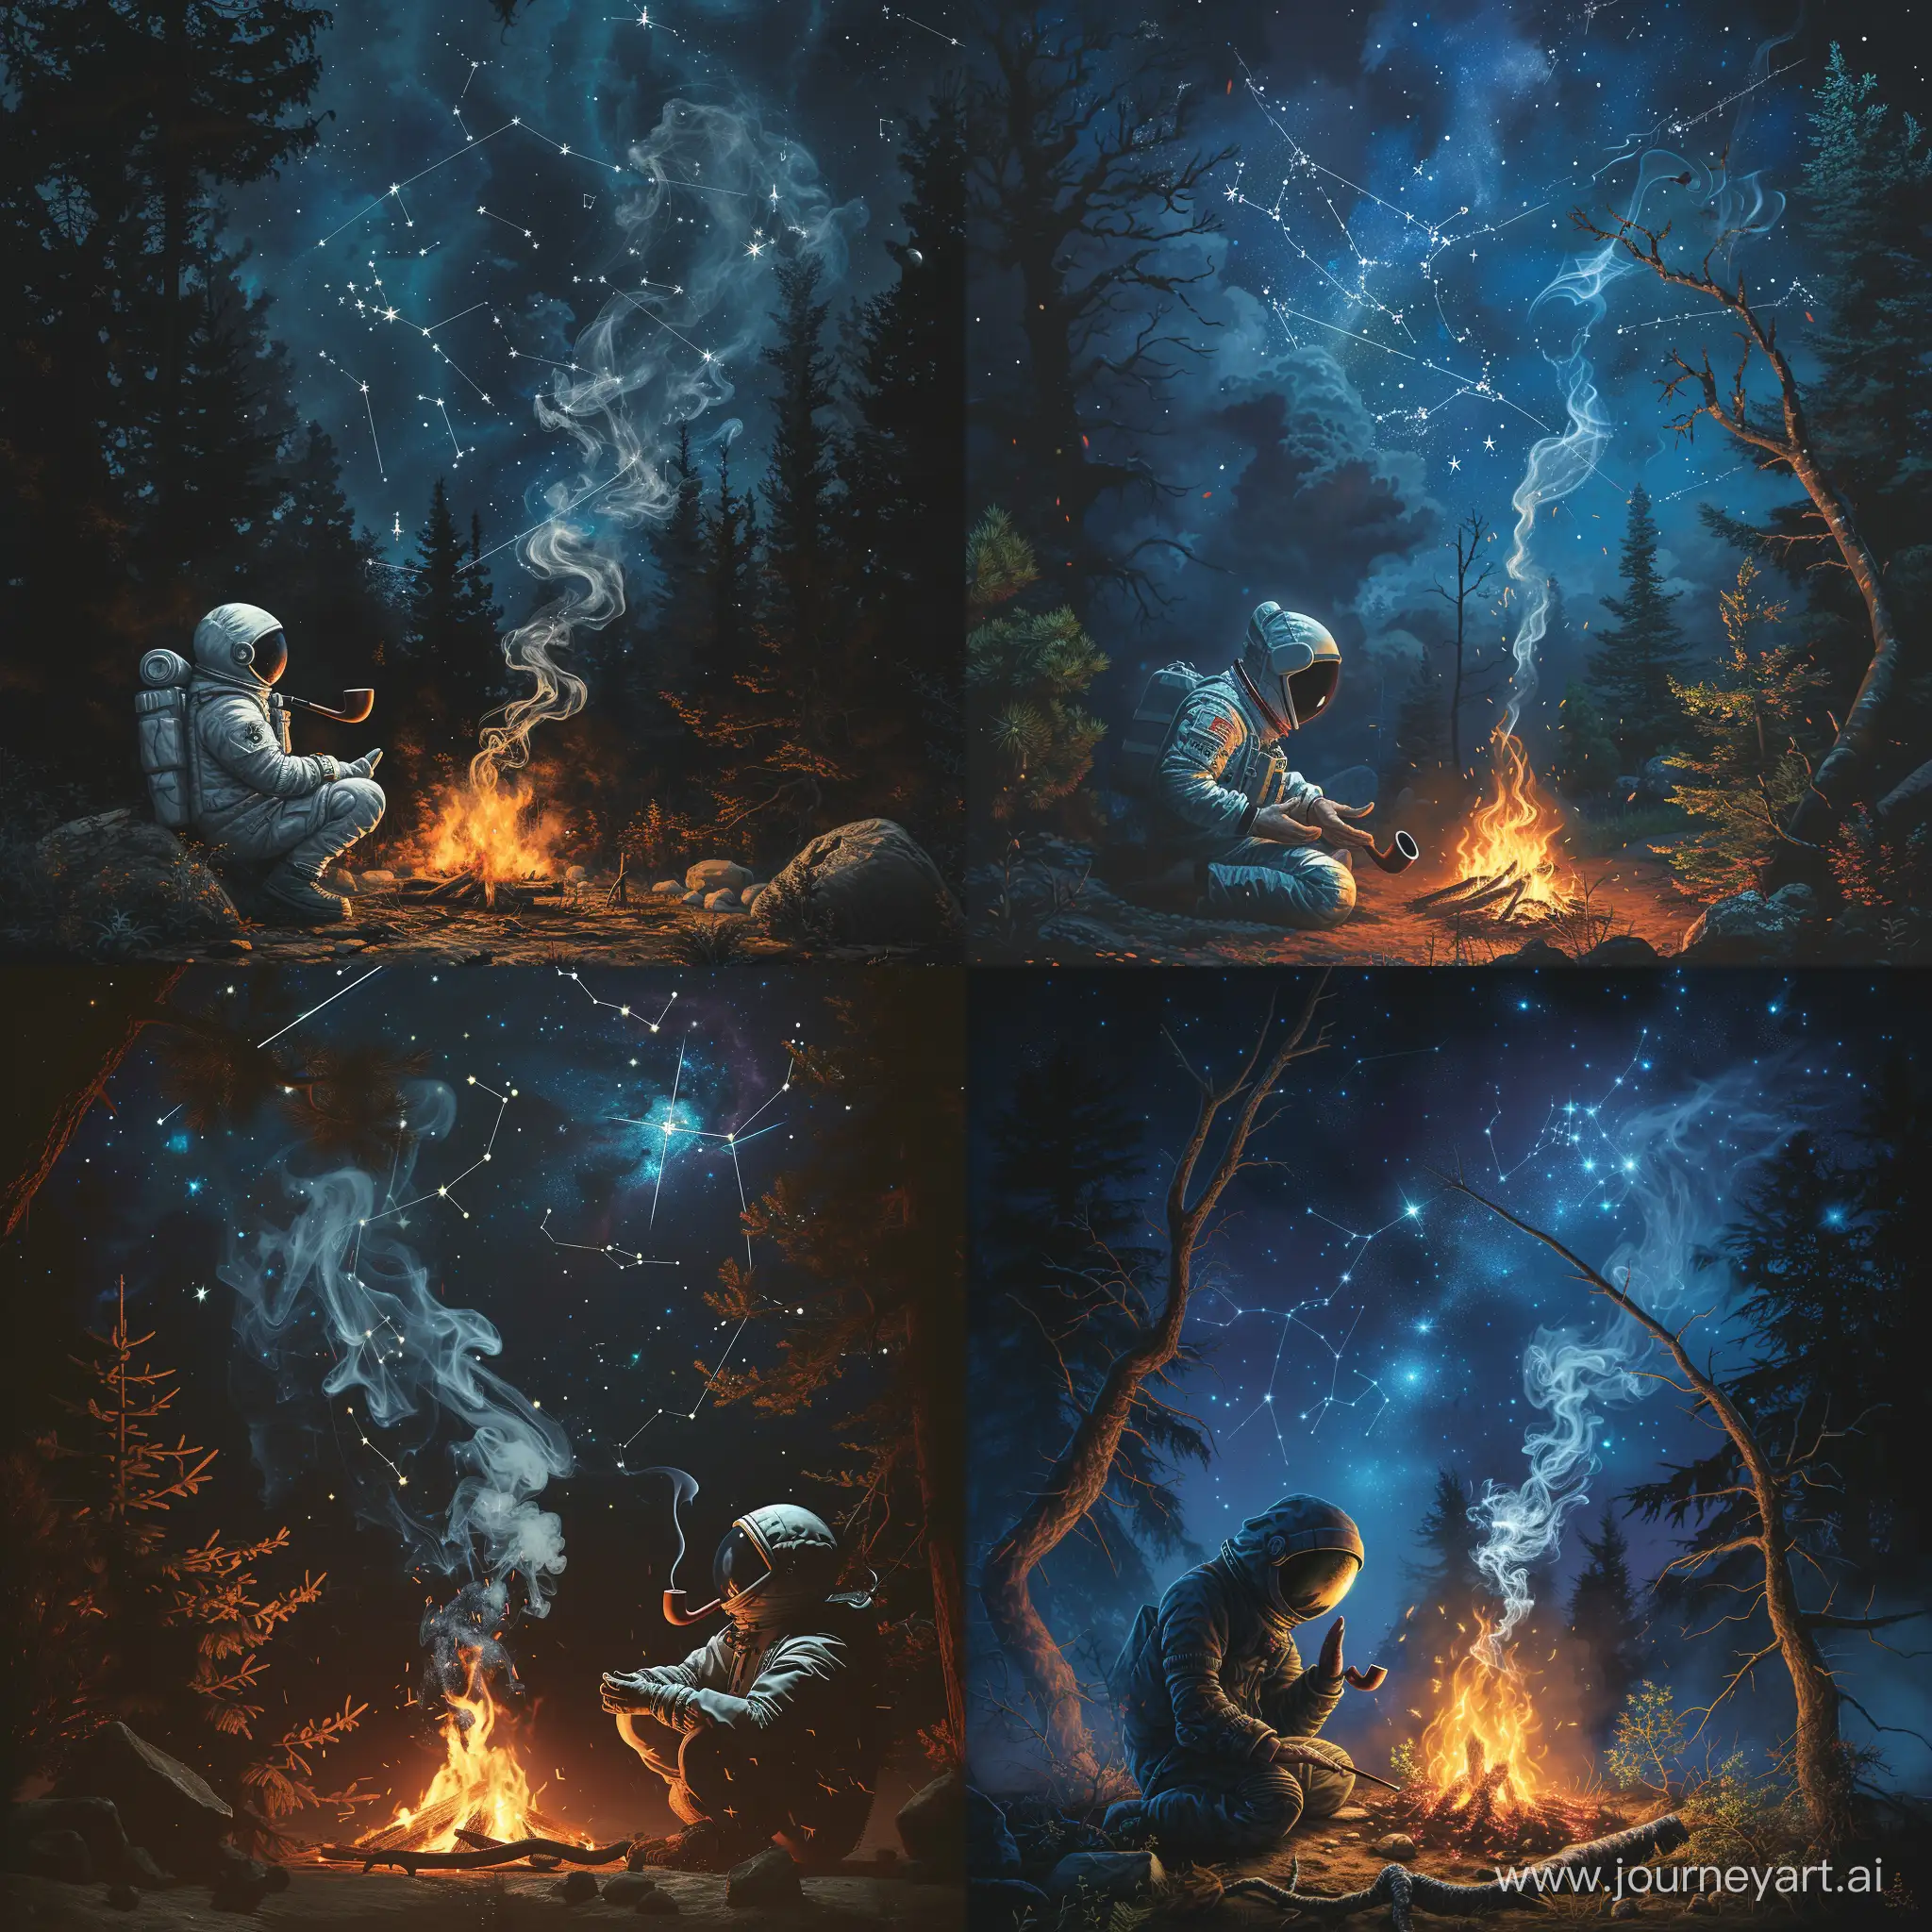 Одинокий космонавт молится ночью у огромного костра в диком живом лесу. 
В руках у него  курительная трубка , из которой выходит дым.
А сверху звезды и созвездия.